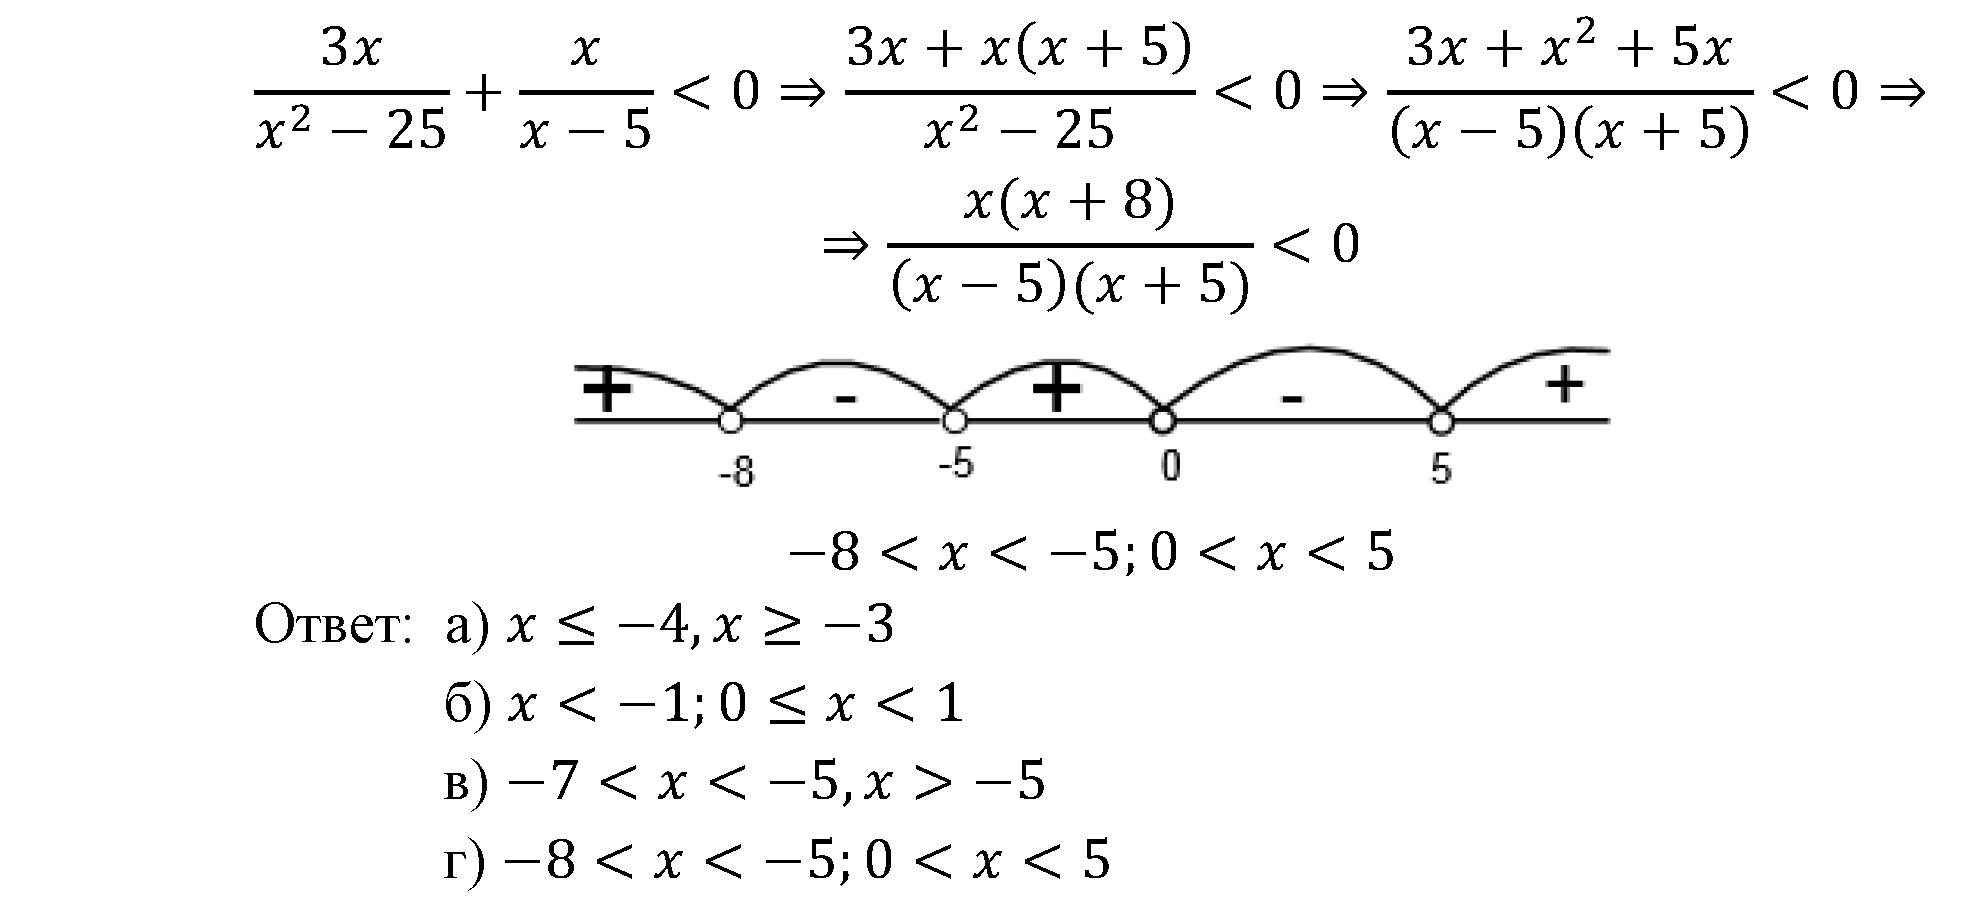 задача №2.33 алгебра 9 класс Мордкович